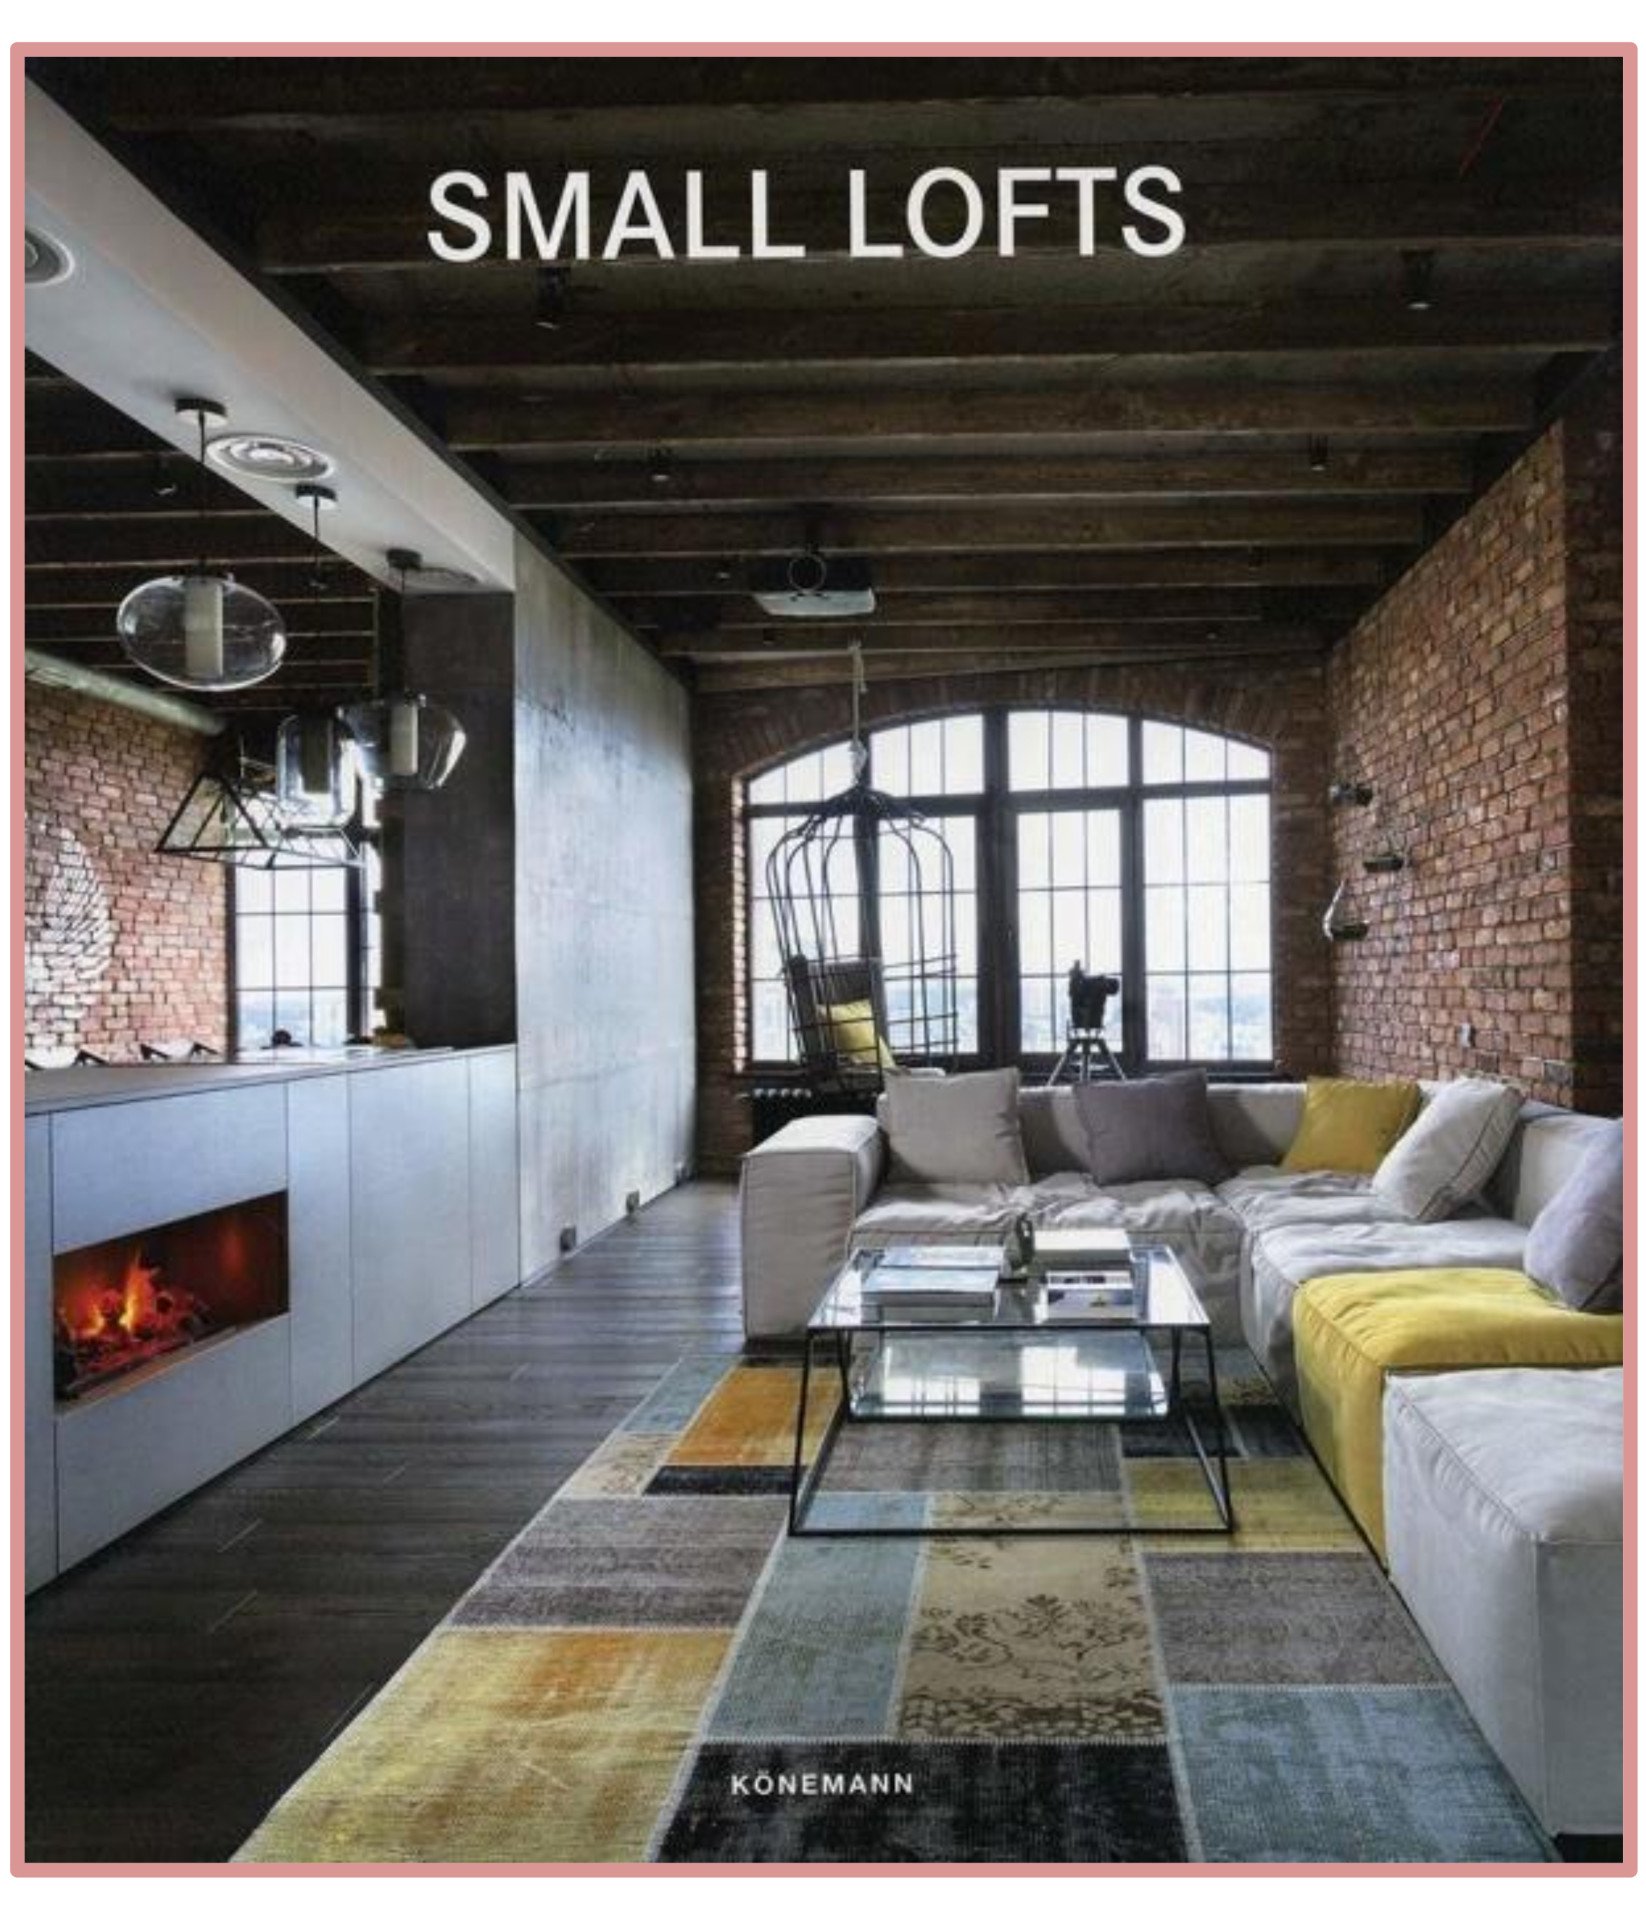 Small Lofts (Mimarlık: Küçük Loft Tasarımları)